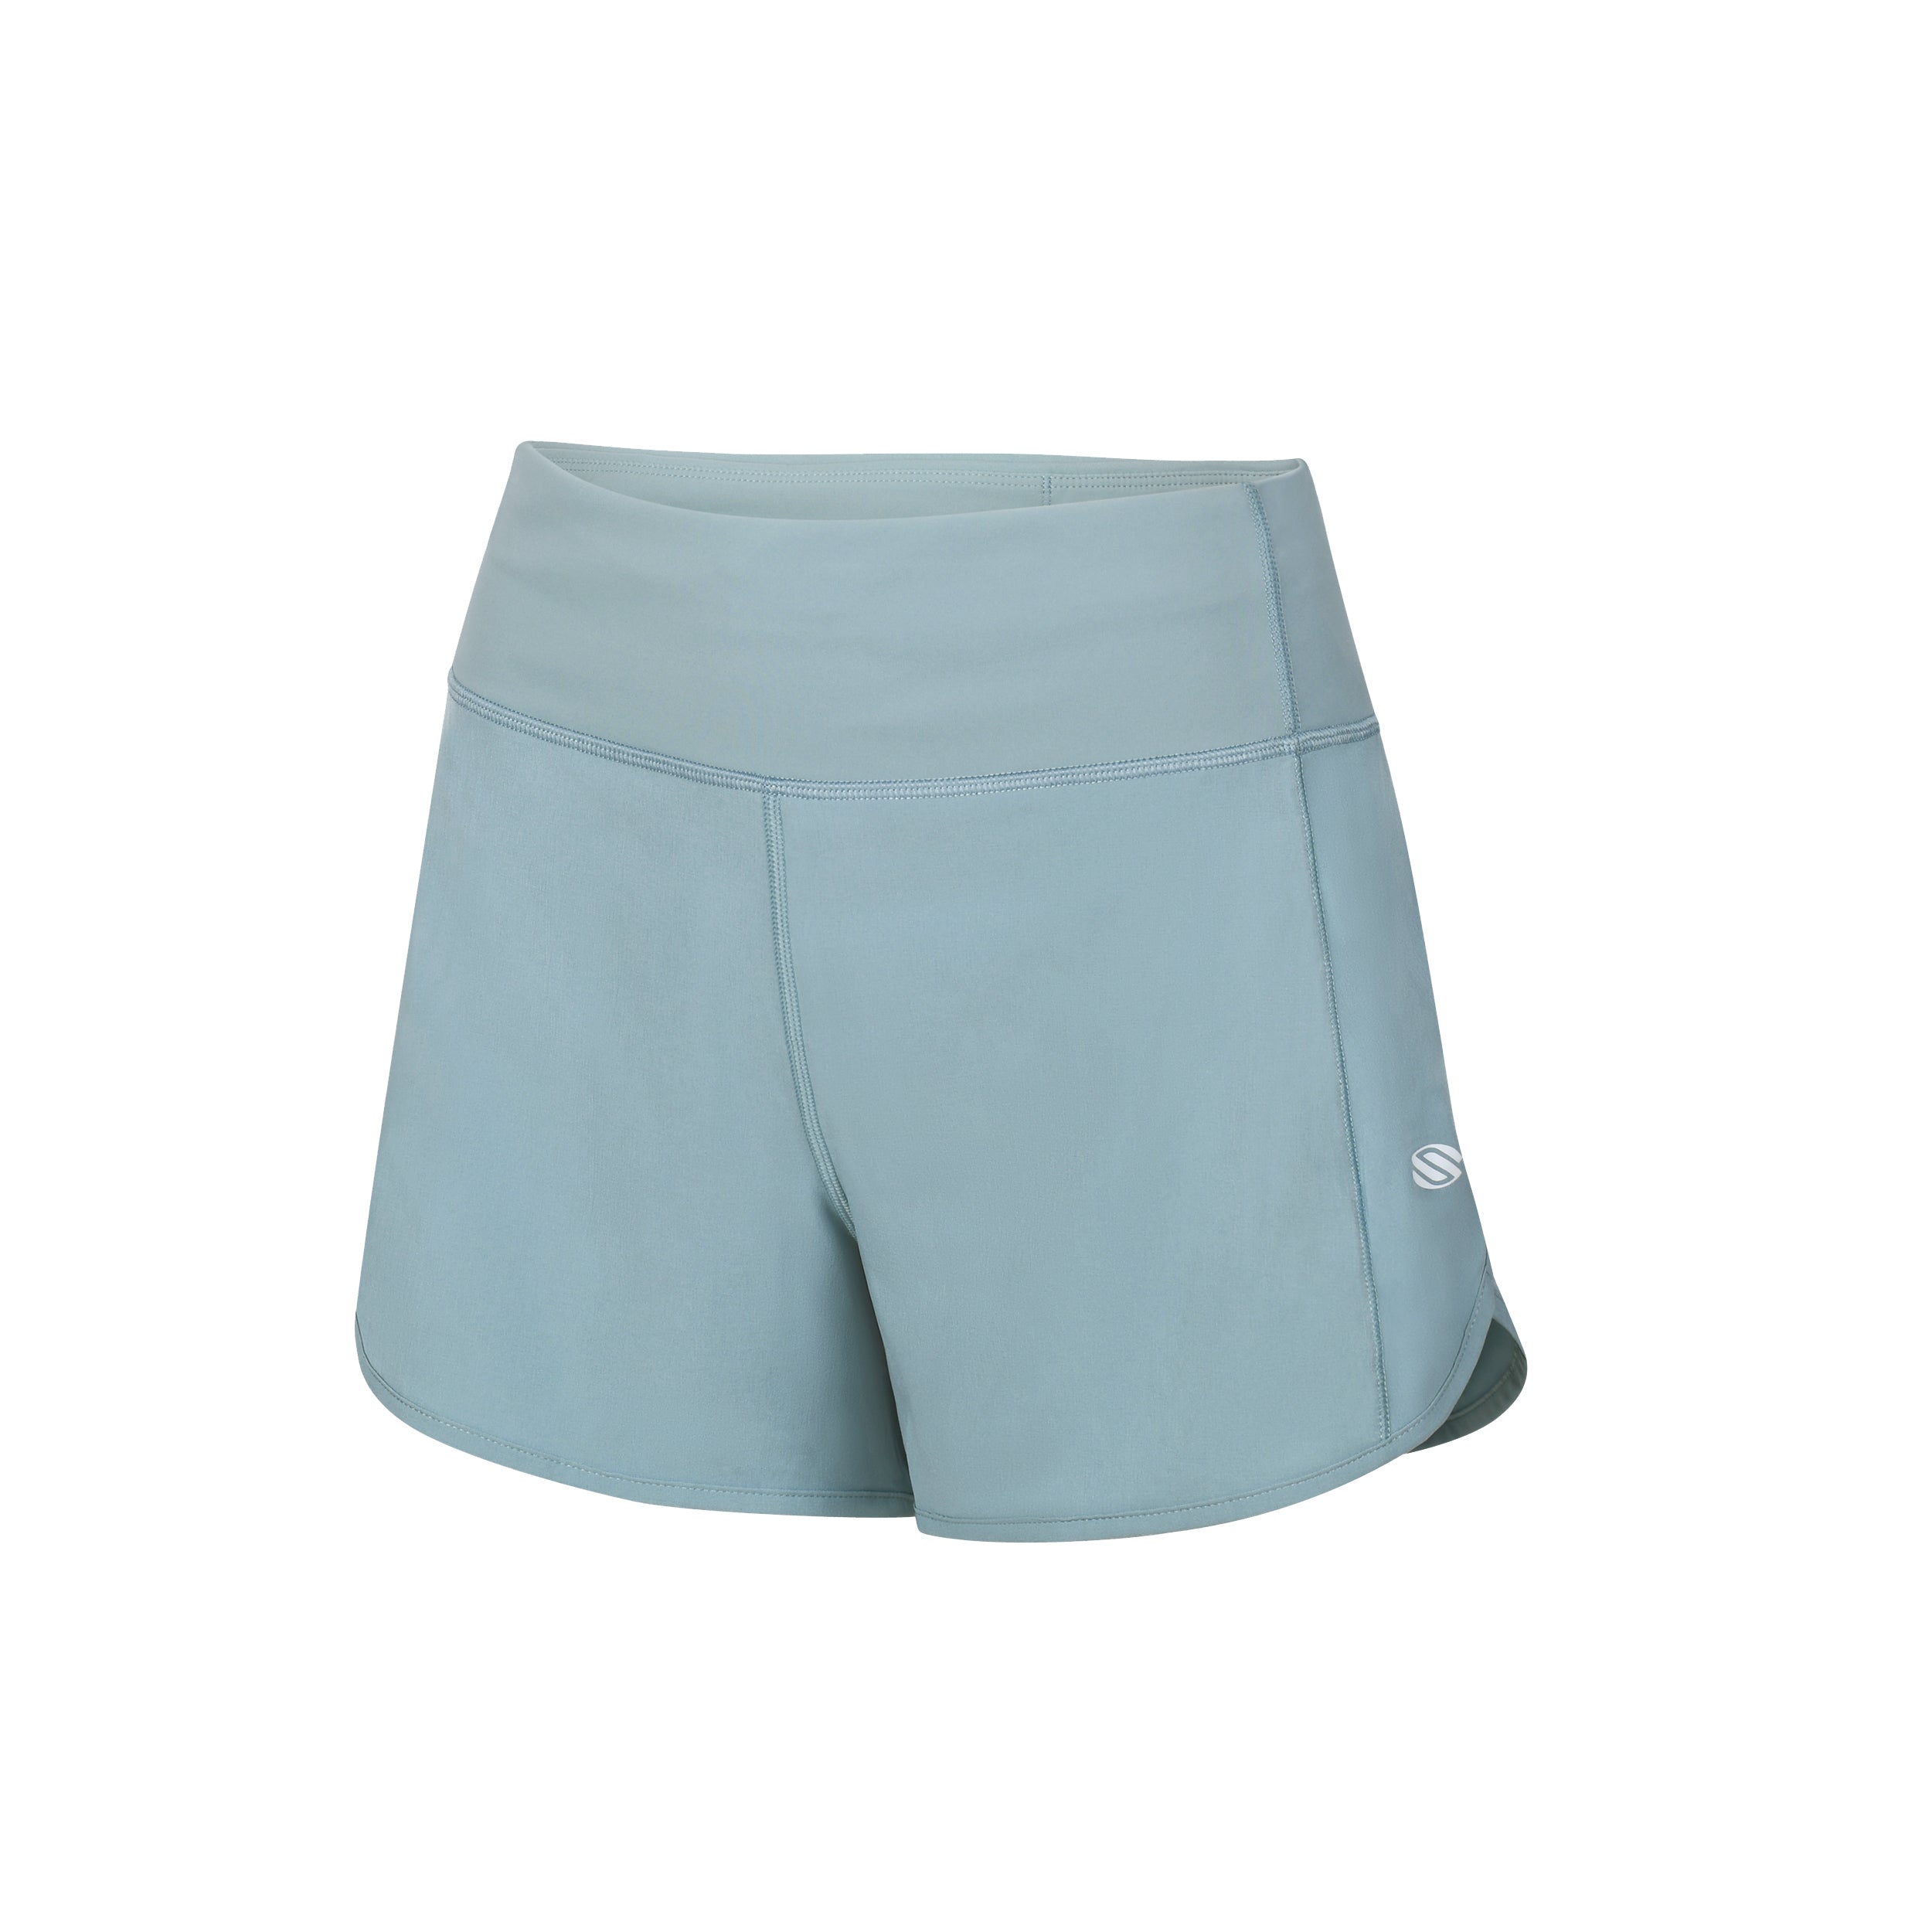 AvaLee by Selkirk Women's Petal-cut Shorts